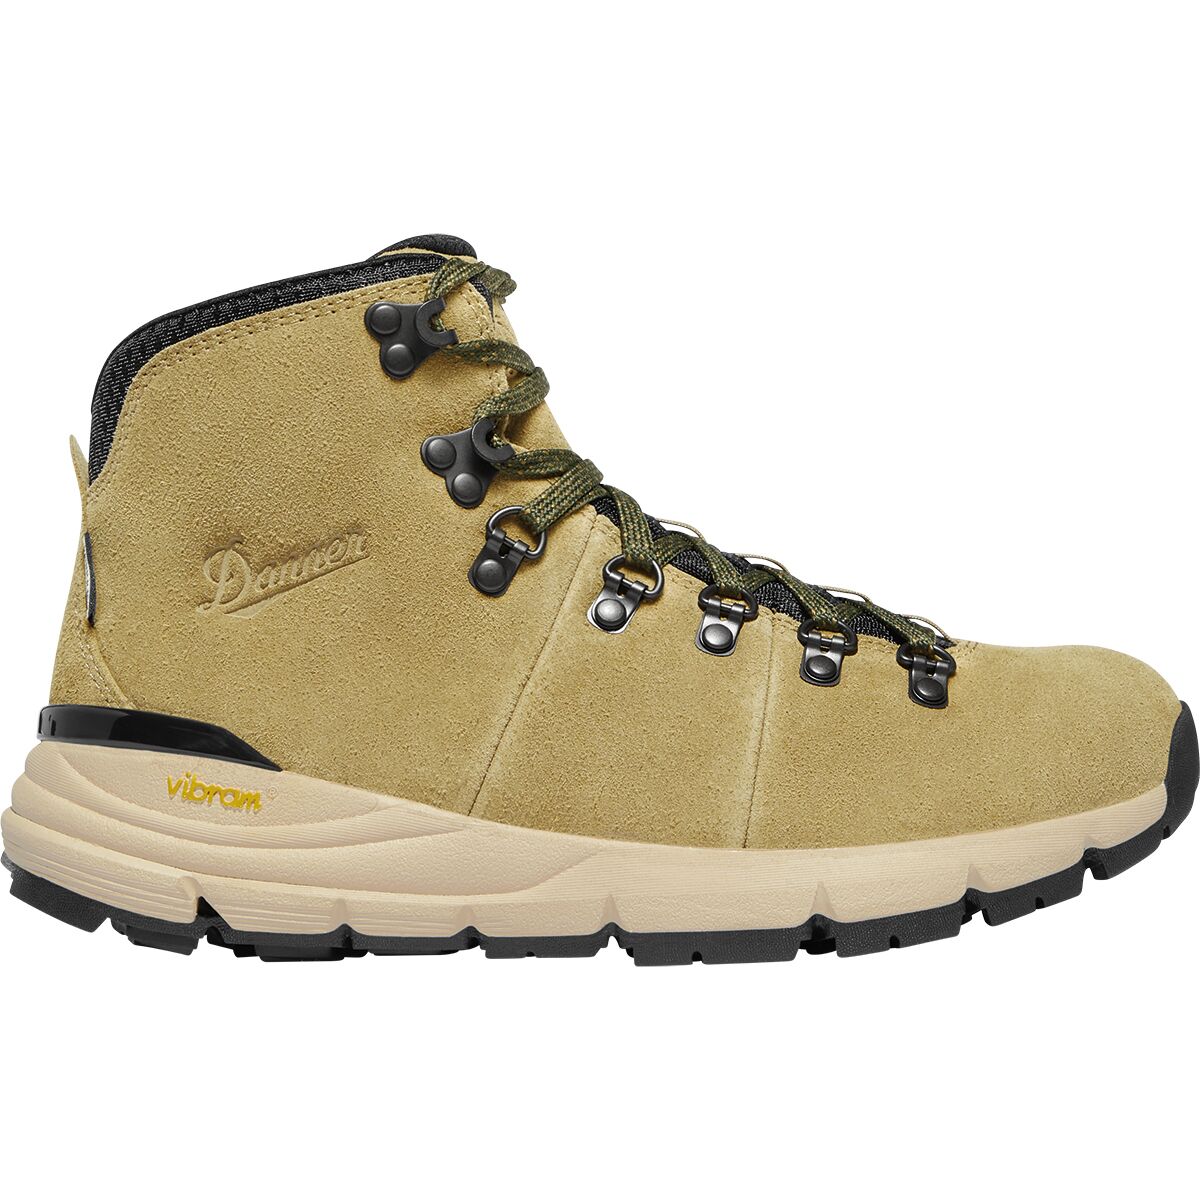 Danner Mountain 600 Hiking Boot - Women's Antique Bronze/Murky Green 10.0